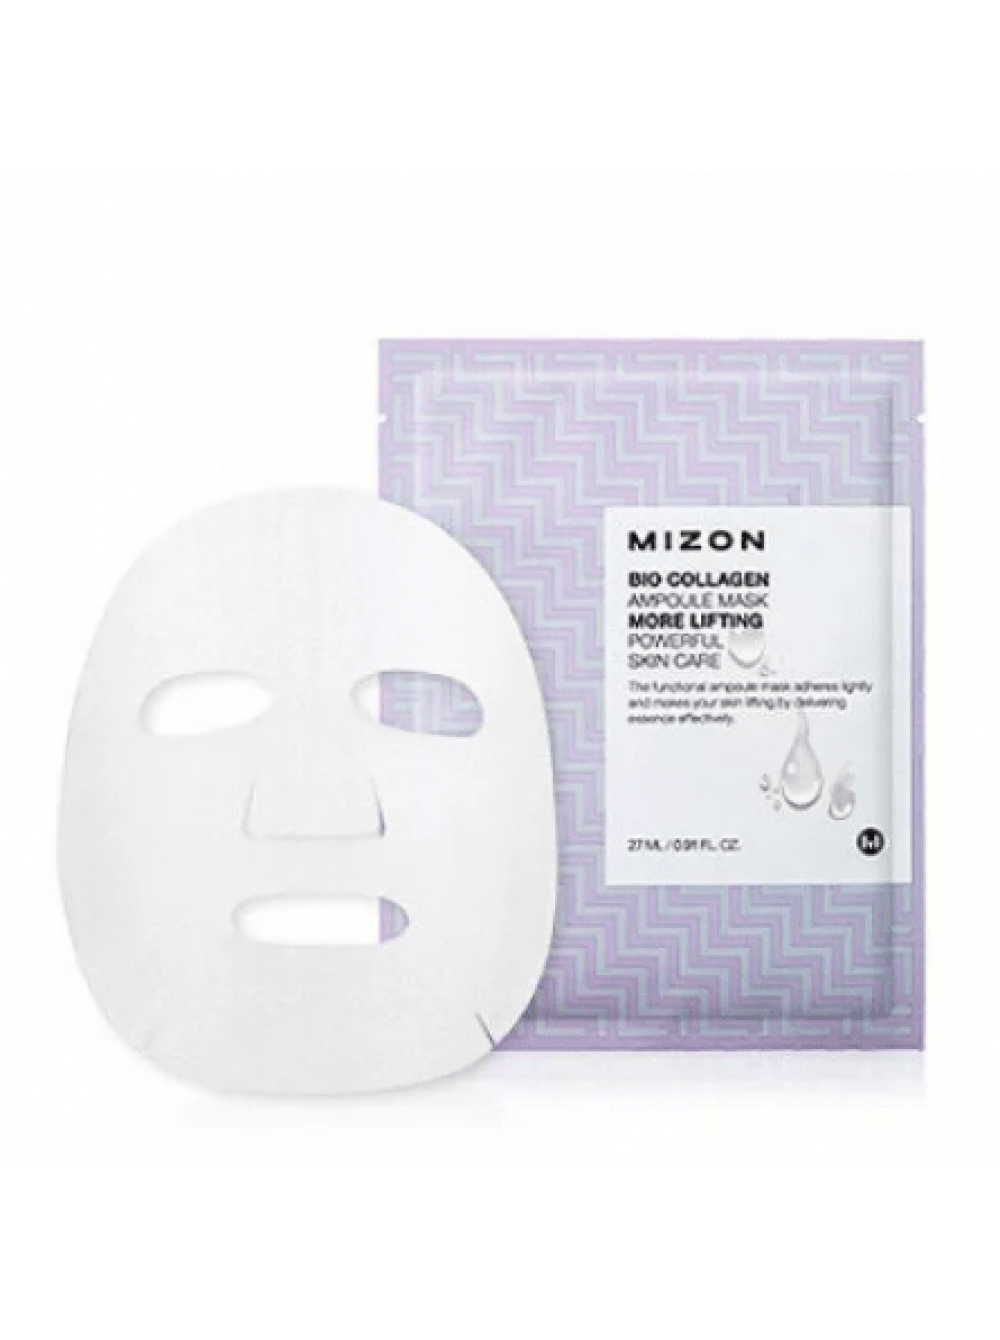 Упаковка для тканевых масок. Тканевые маски для лица. Маски для лица упаковка. Листовая маска для лица. Маски для лица тканевые упаковка.